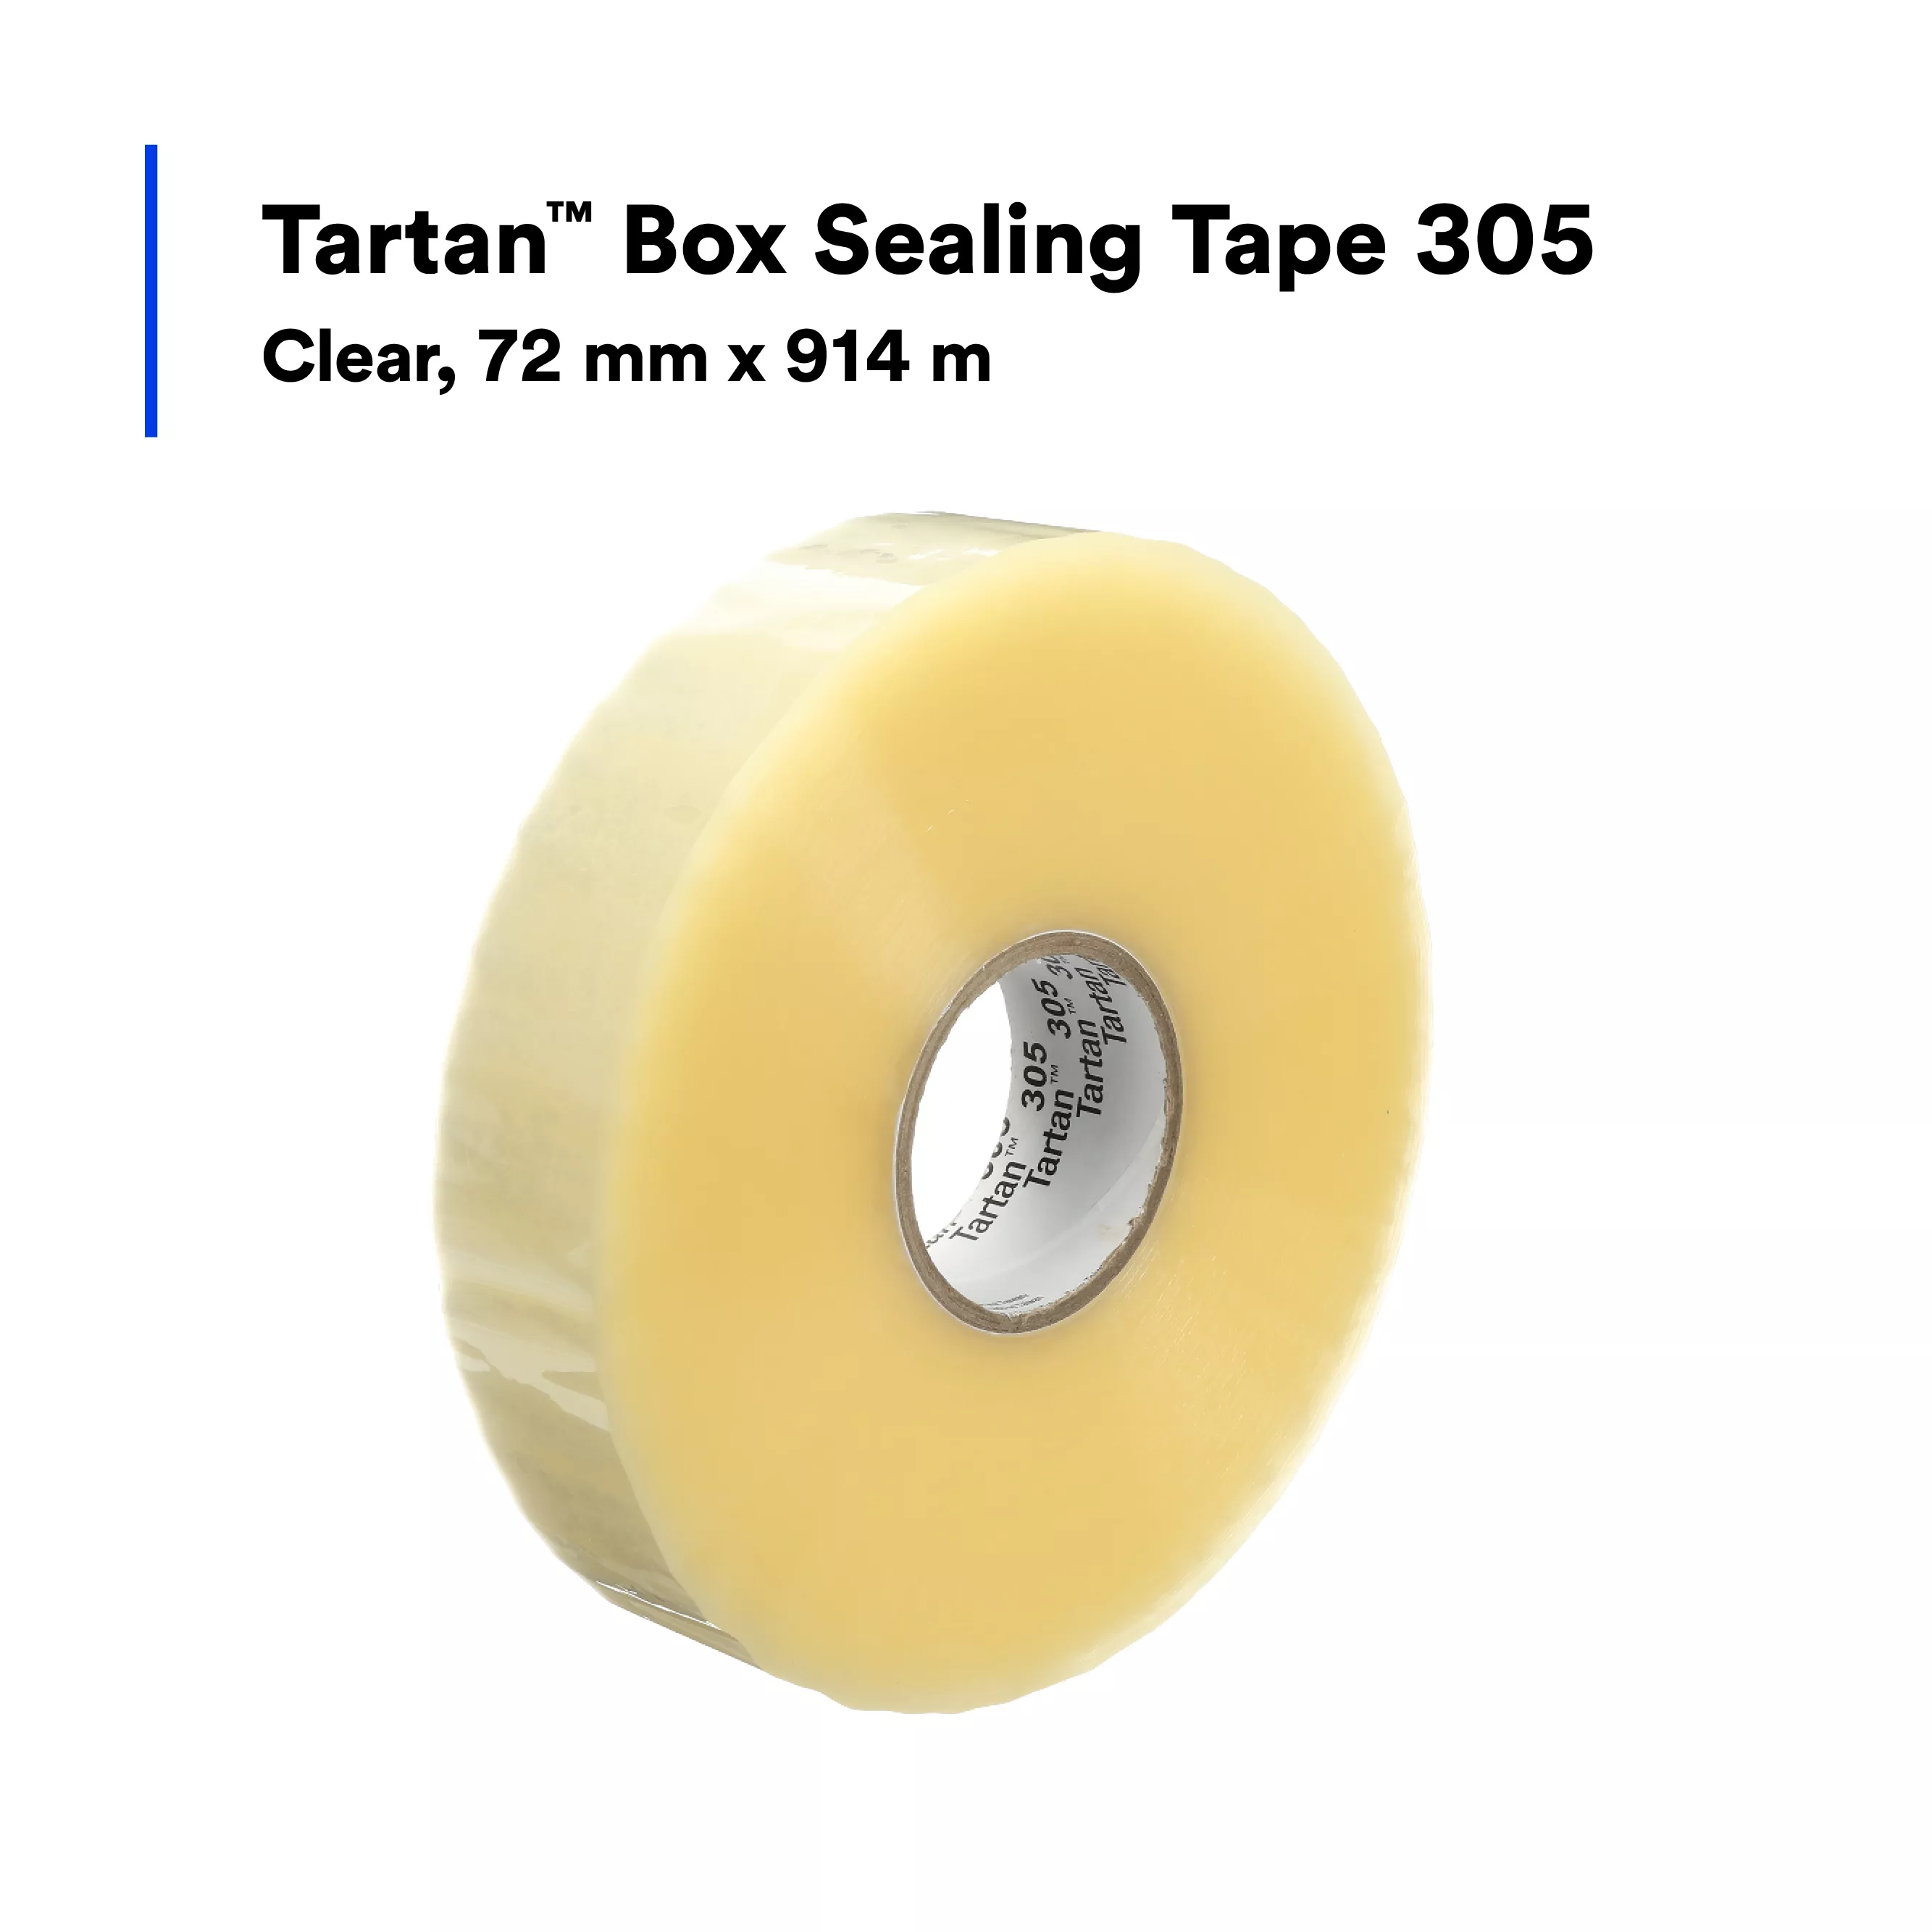 Product Number 305 | Tartan™ Box Sealing Tape 305